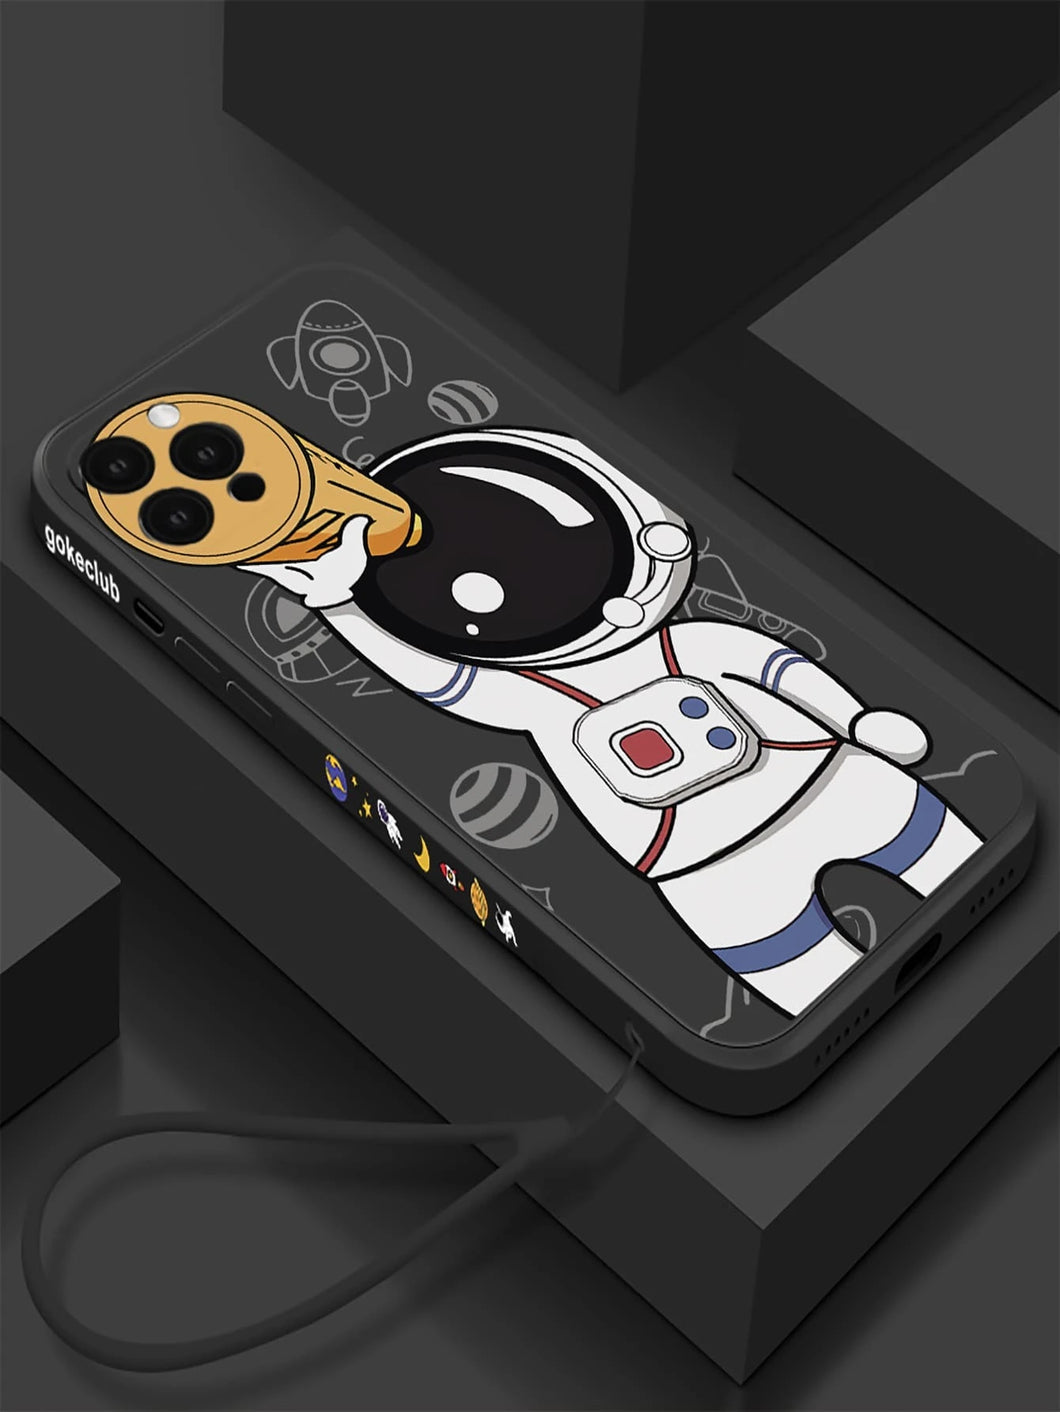 Cover para iPhone, estilo astronauta: disponible desde iPhone 7 Plus hasta iPhone 13 Pro Max✅️